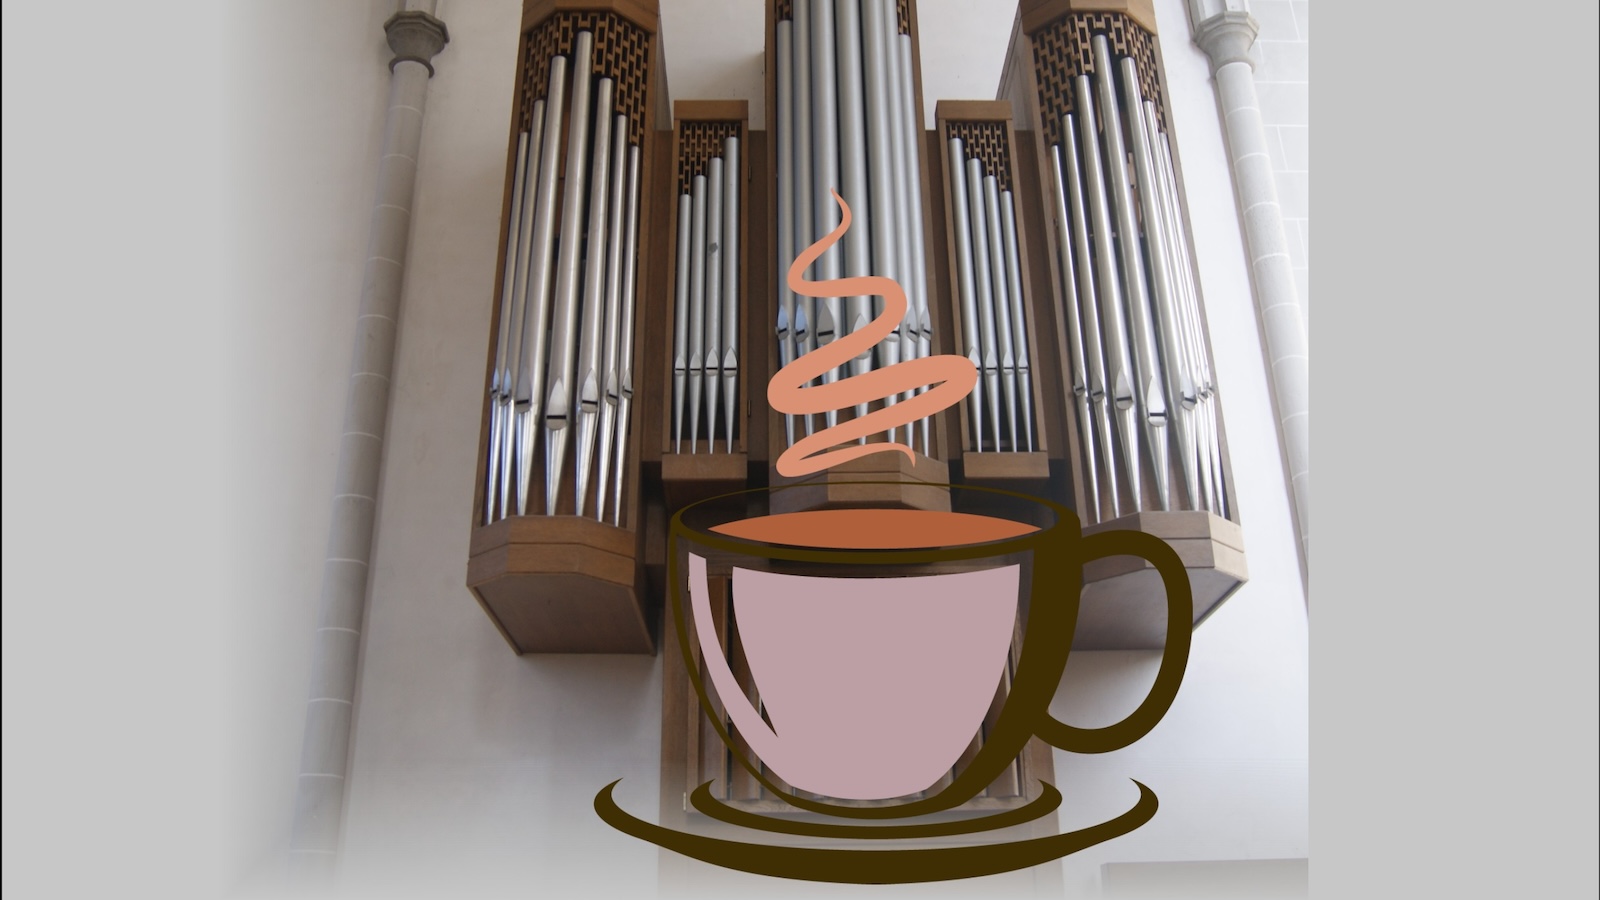 Kaffeeduft und Orgelklang in der Marienkirche